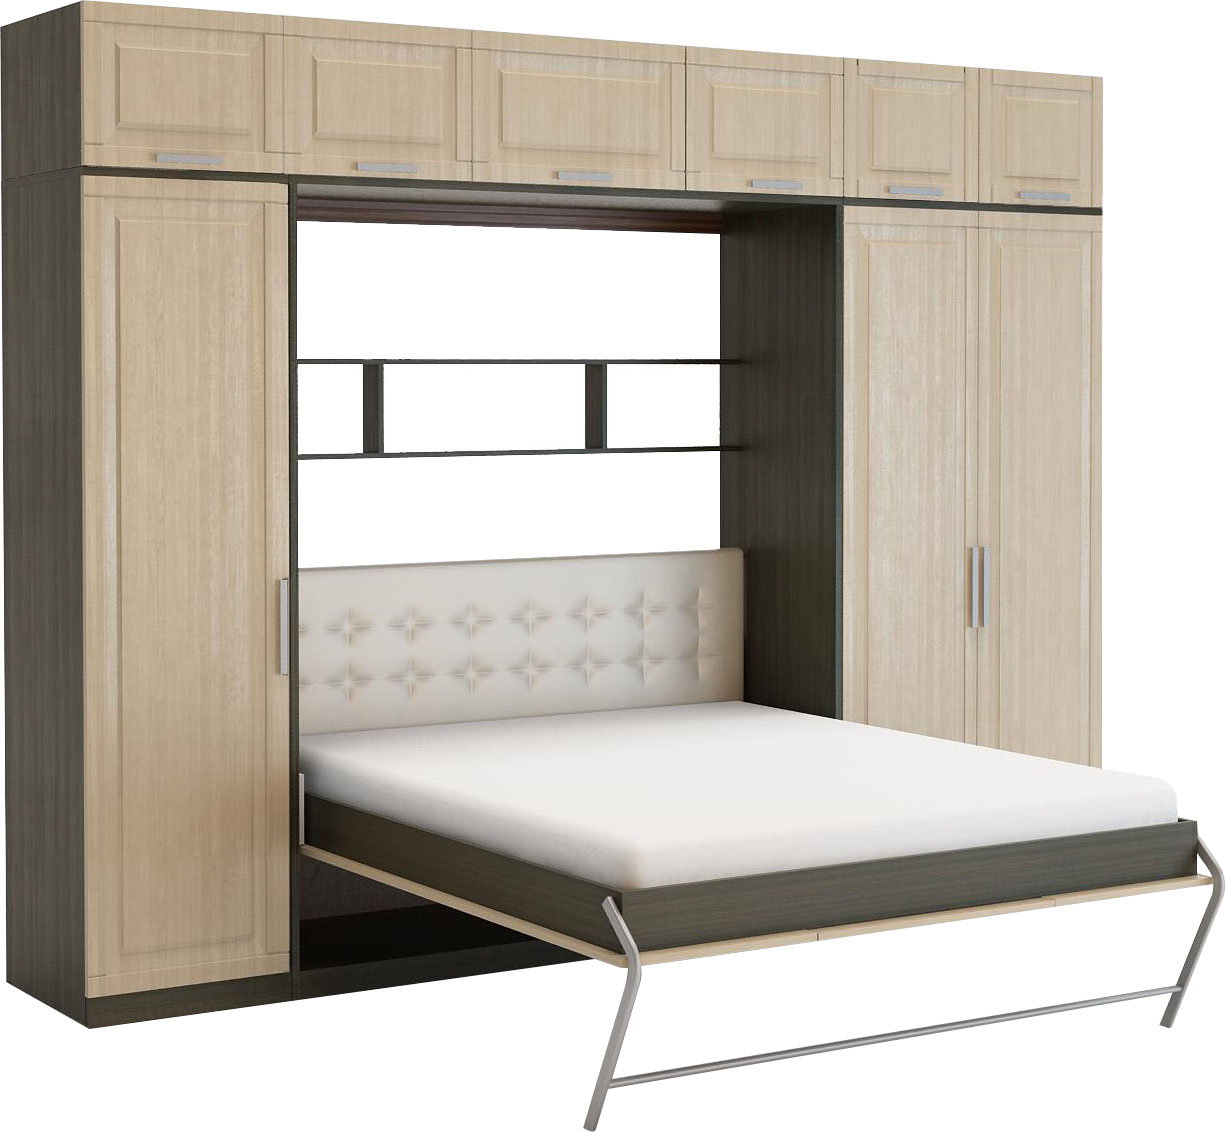 Аскона подъемная кровать шкаф